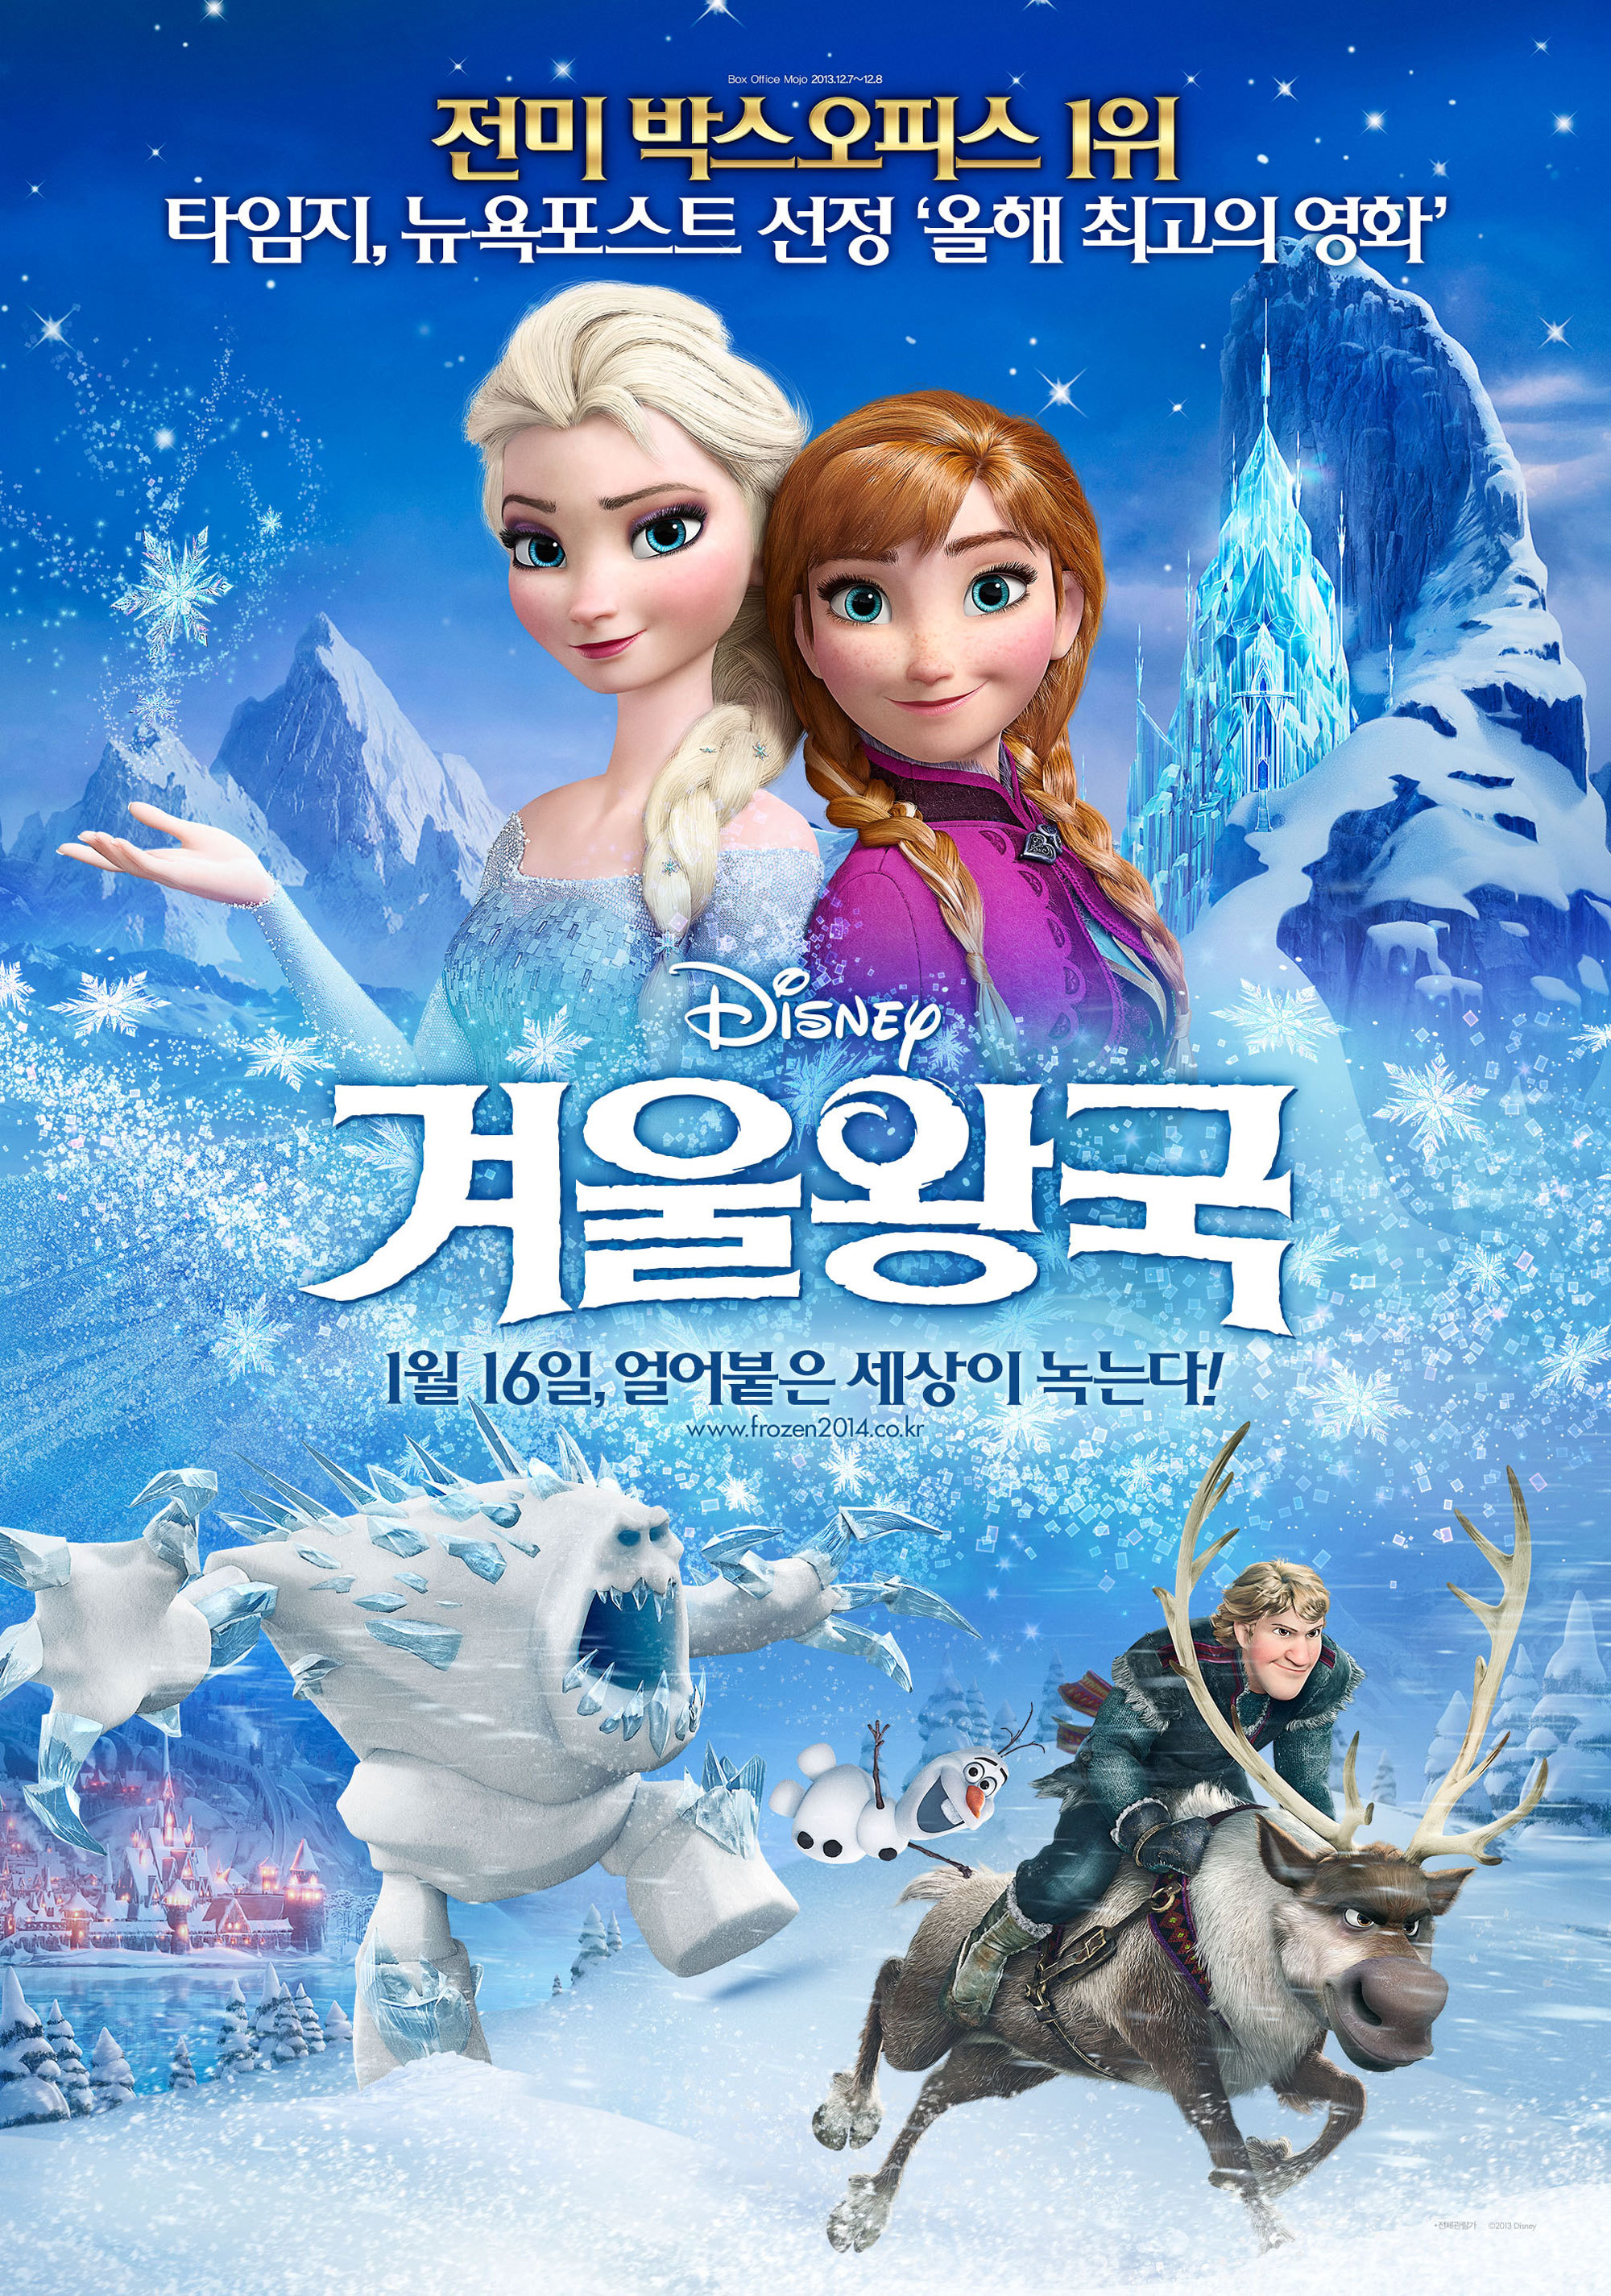 아이와 아이들과 볼만한 영화 겨울왕국 (2013) 애니메이션